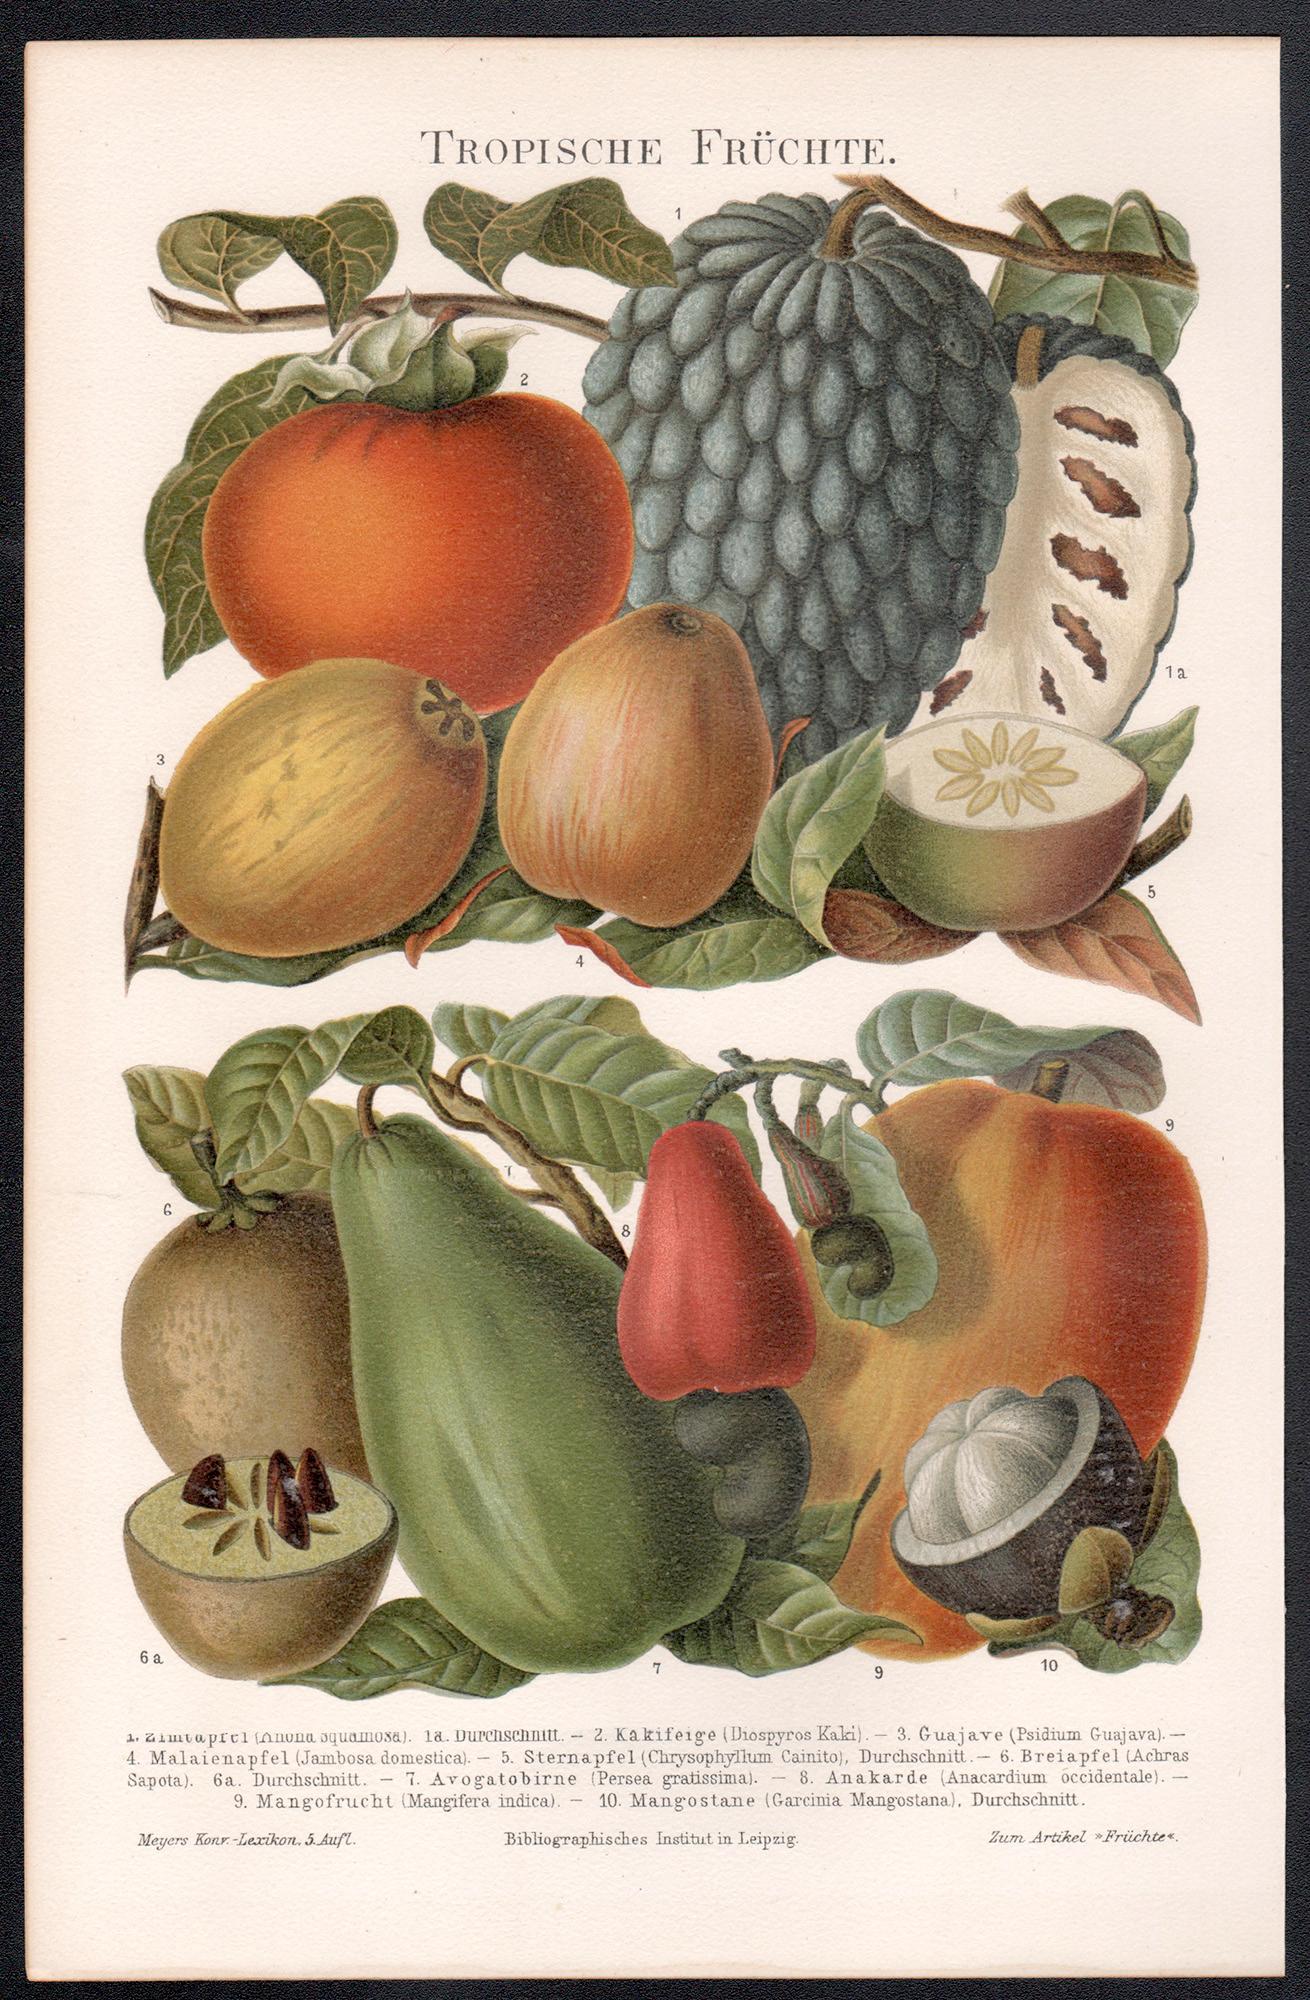 Fruits tropicaux. Impression botanique allemande ancienne d'histoire naturelle - Print de Unknown